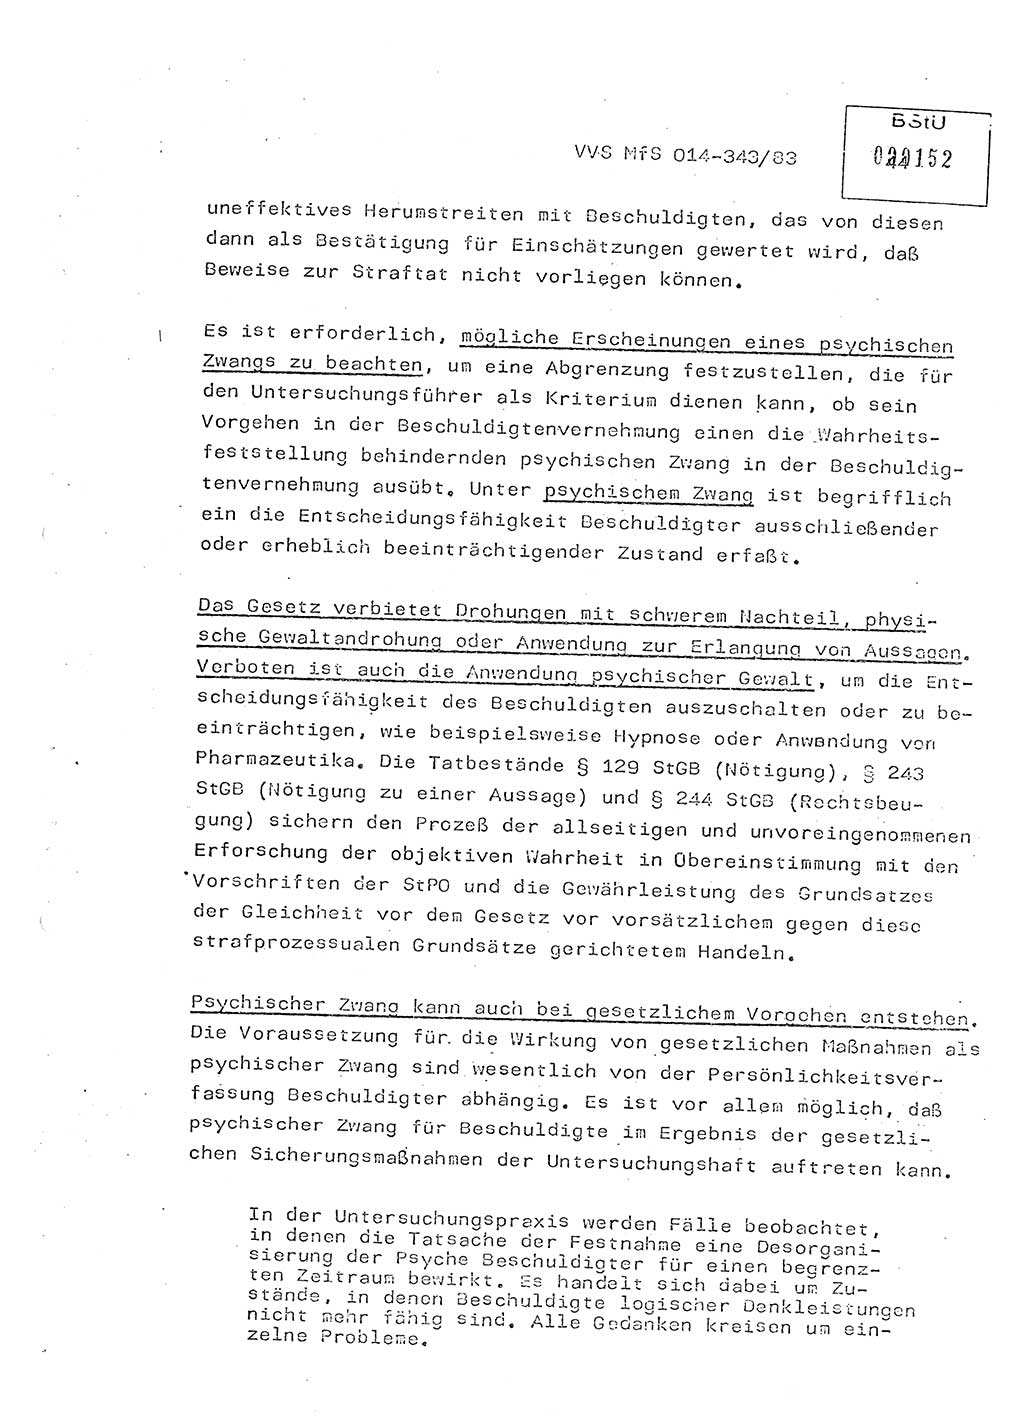 Lektion Ministerium für Staatssicherheit (MfS) [Deutsche Demokratische Republik (DDR)], Hauptabteilung (HA) Ⅸ, Vertrauliche Verschlußsache (VVS) o014-343/83, Berlin 1983, Seite 44 (Lekt. MfS DDR HA Ⅸ VVS o014-343/83 1983, S. 44)